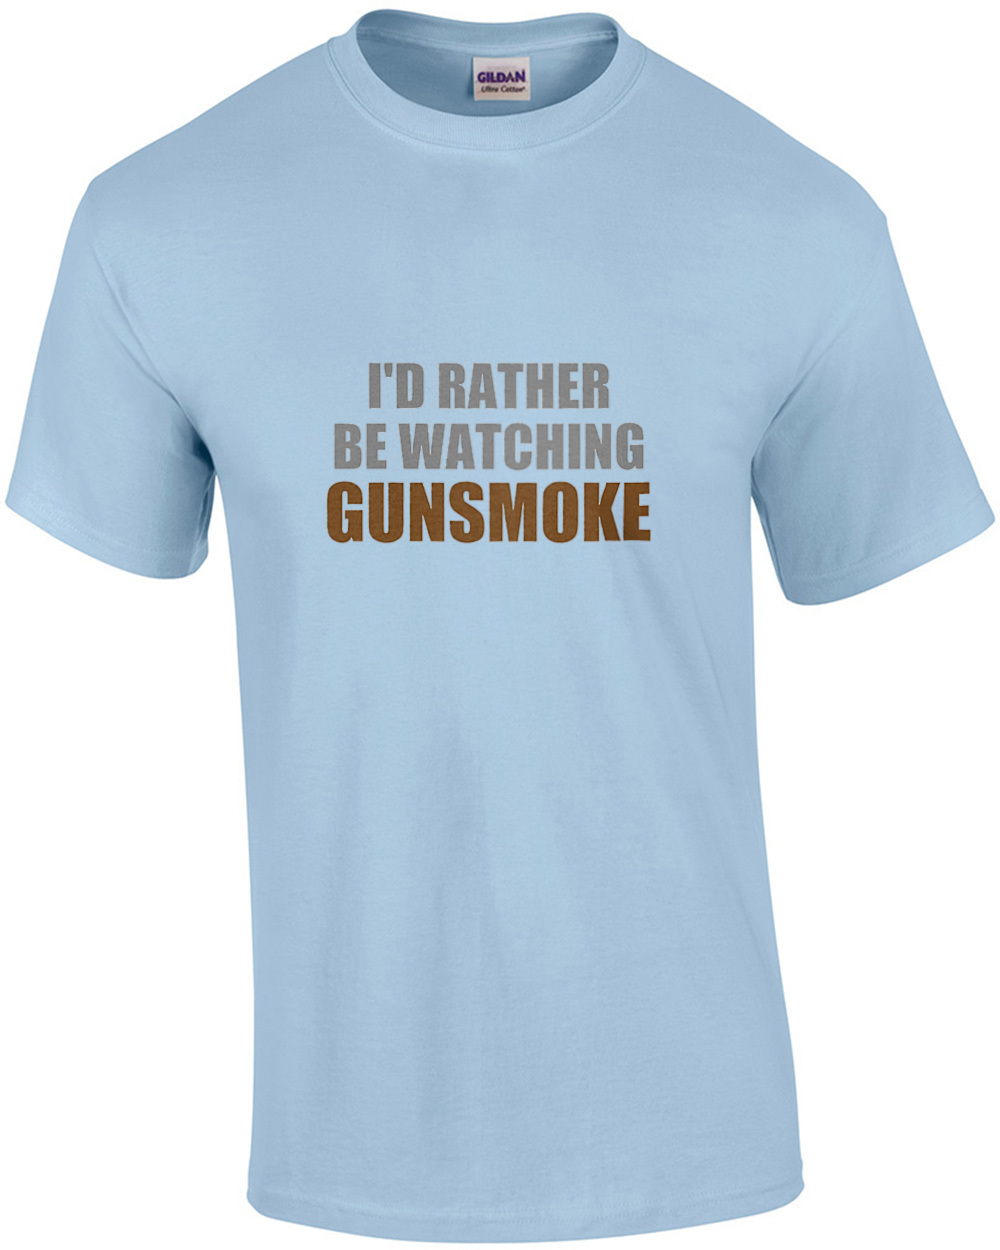 I'd rather be watching Gunsmoke - gunsmoke t-shirt